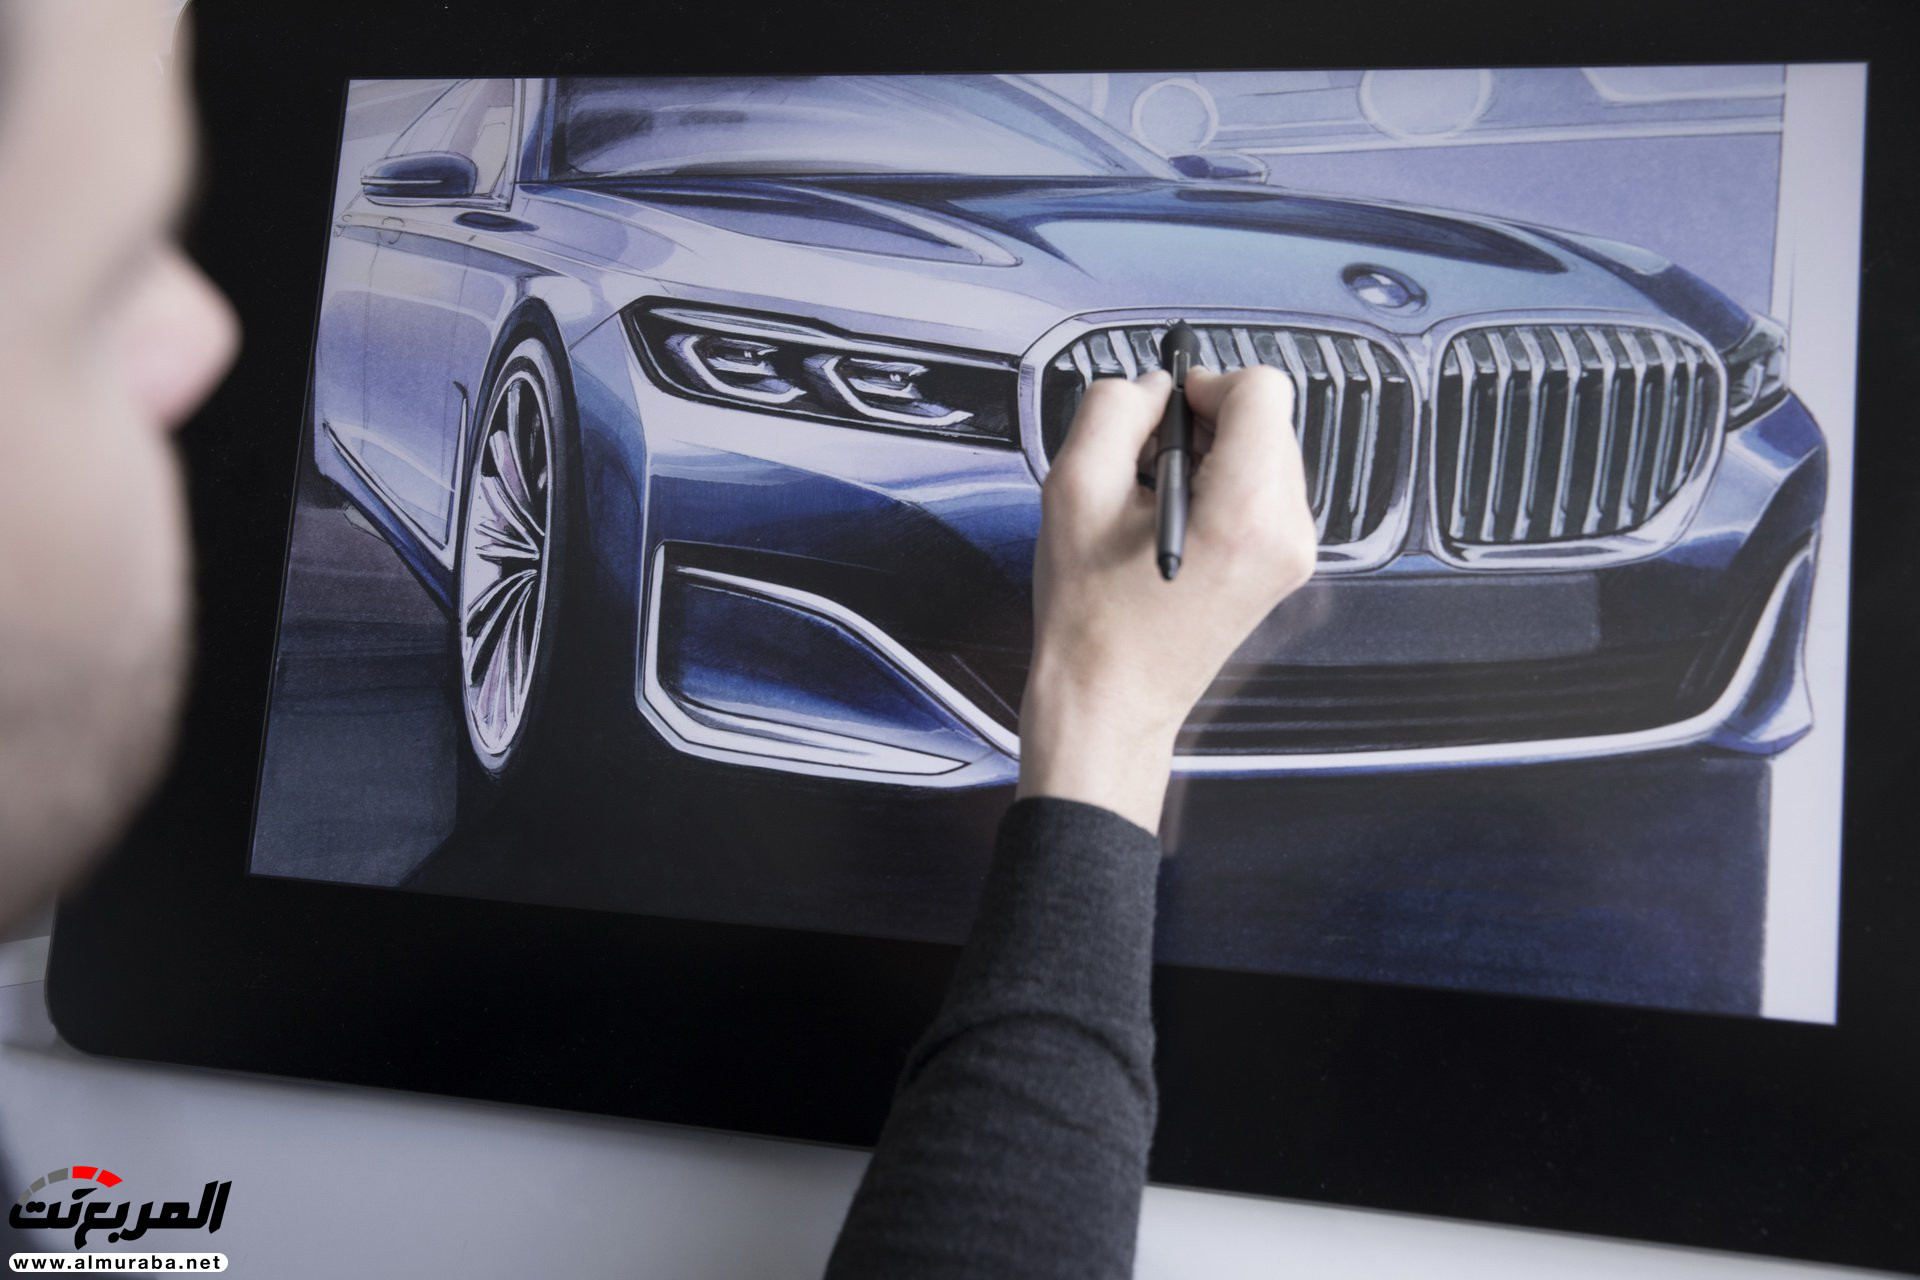 بي ام دبليو الفئة السابعة 2020 المحدثة تكشف نفسها رسمياً "صور ومواصفات" BMW 7 Series 251